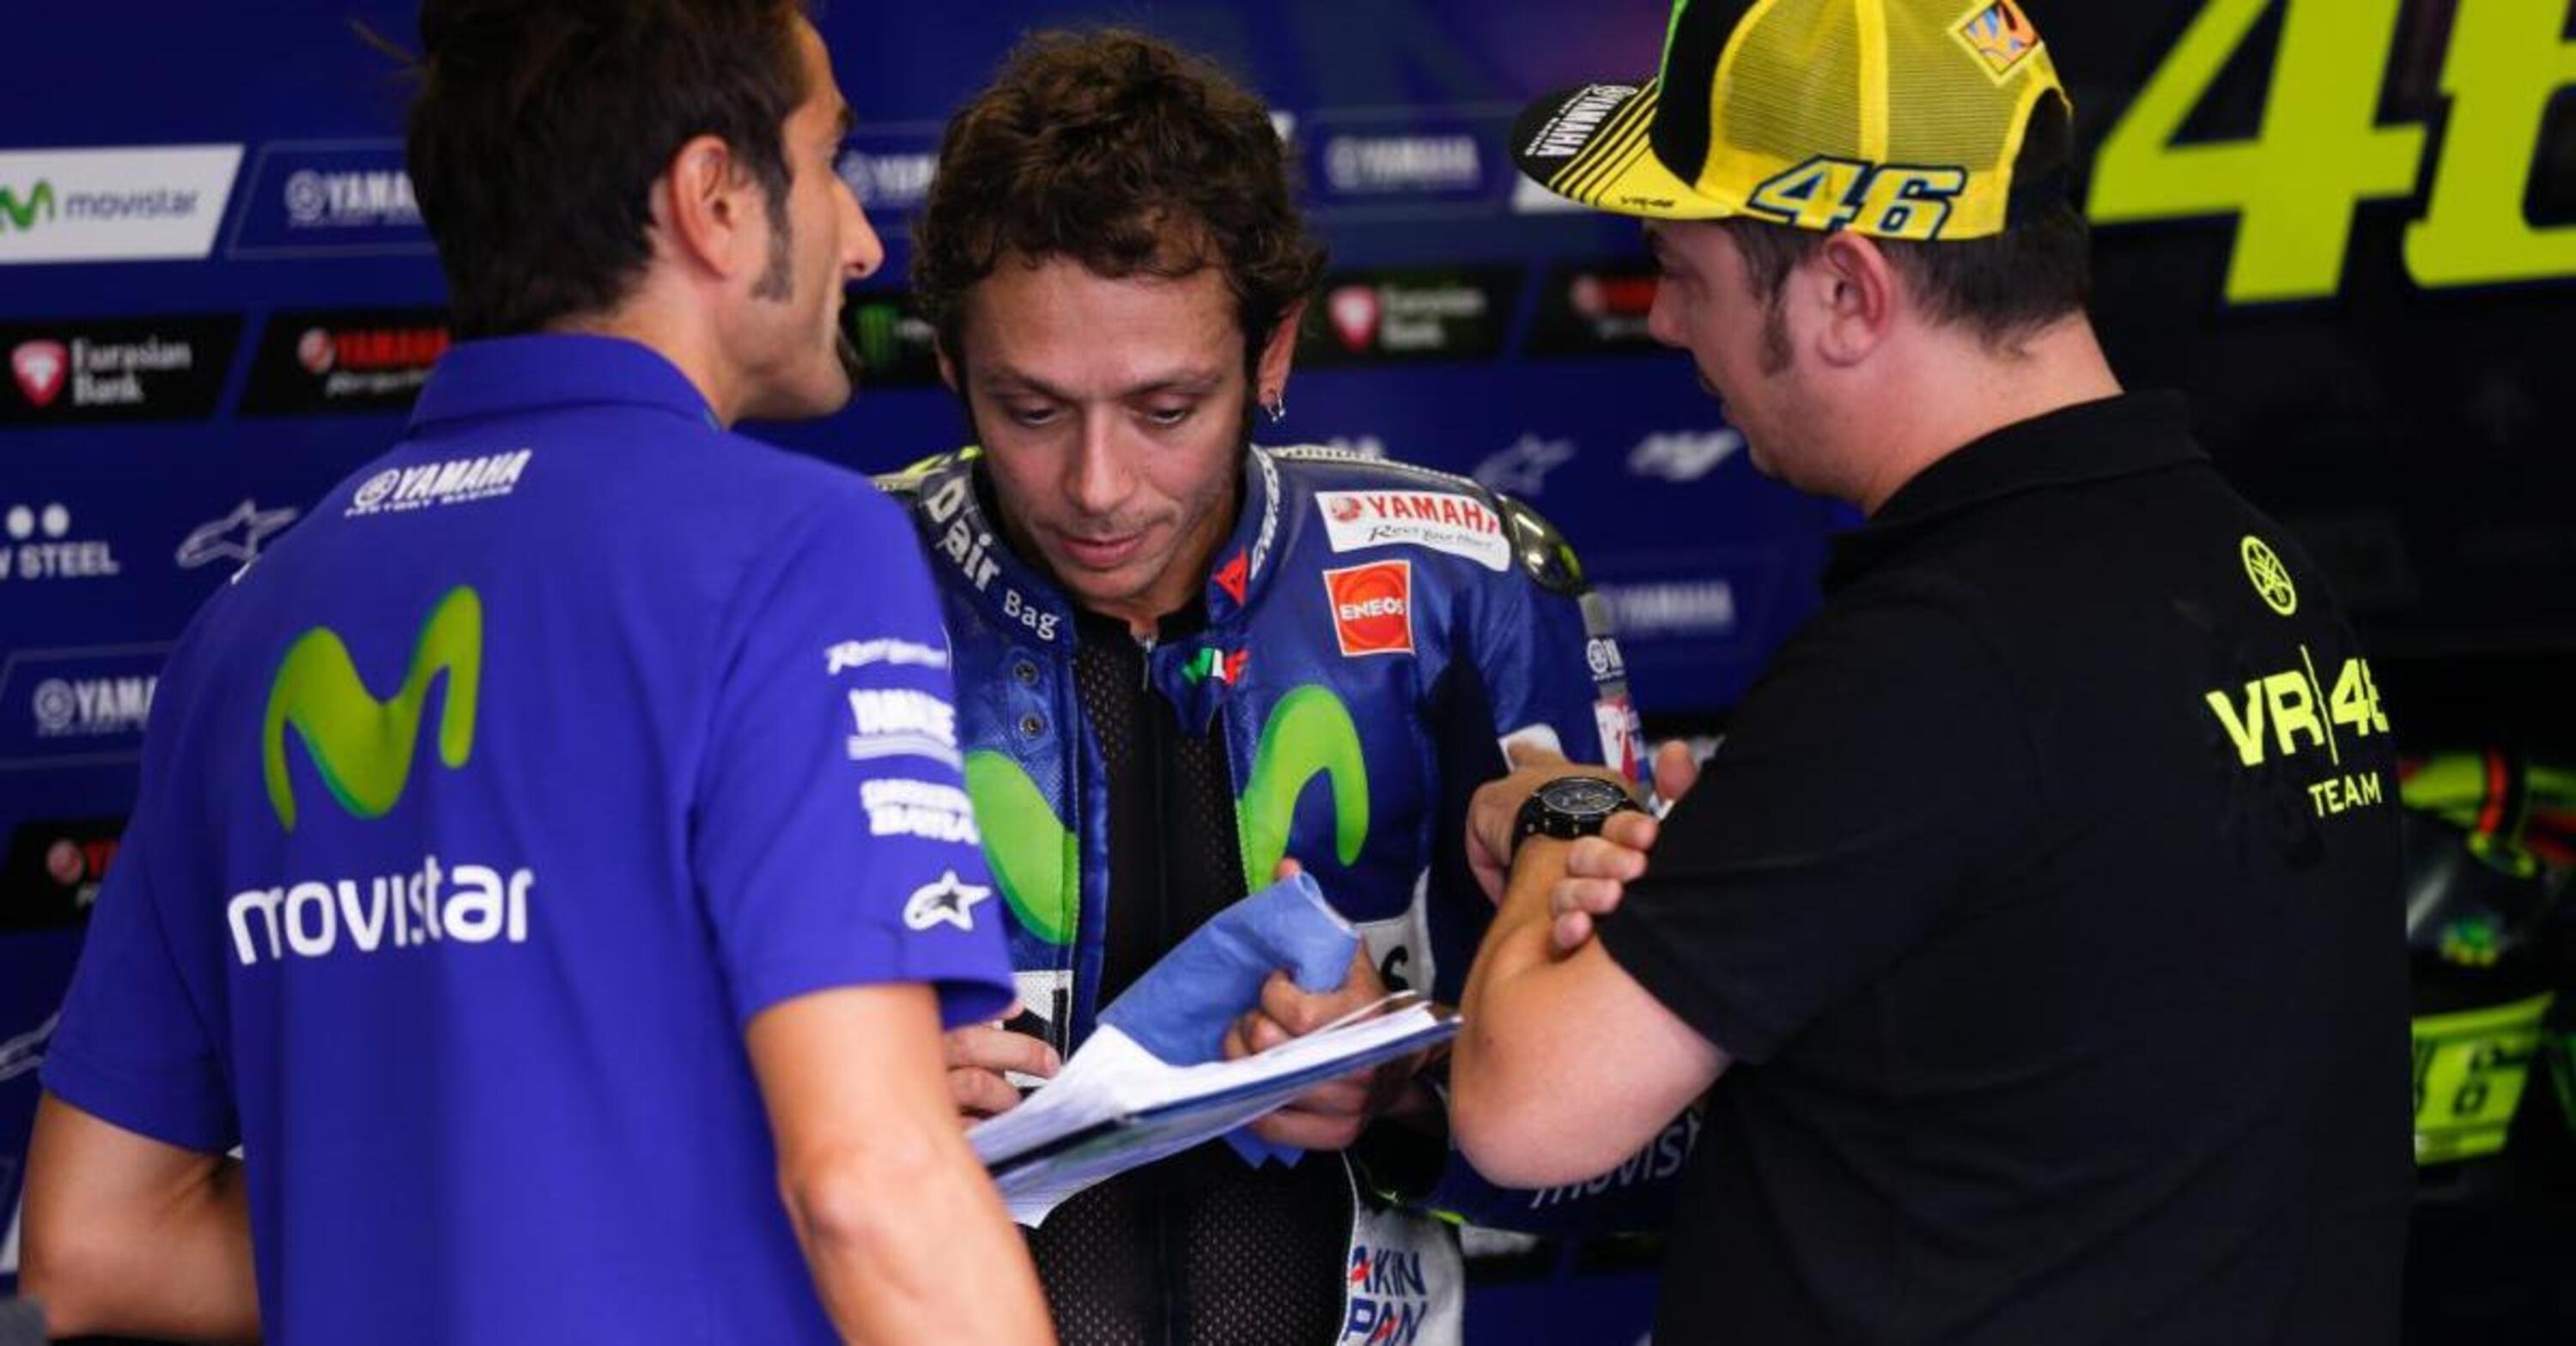 MotoGP 2015. Rossi e Lorenzo impegnati nei test Yamaha ad Aragon